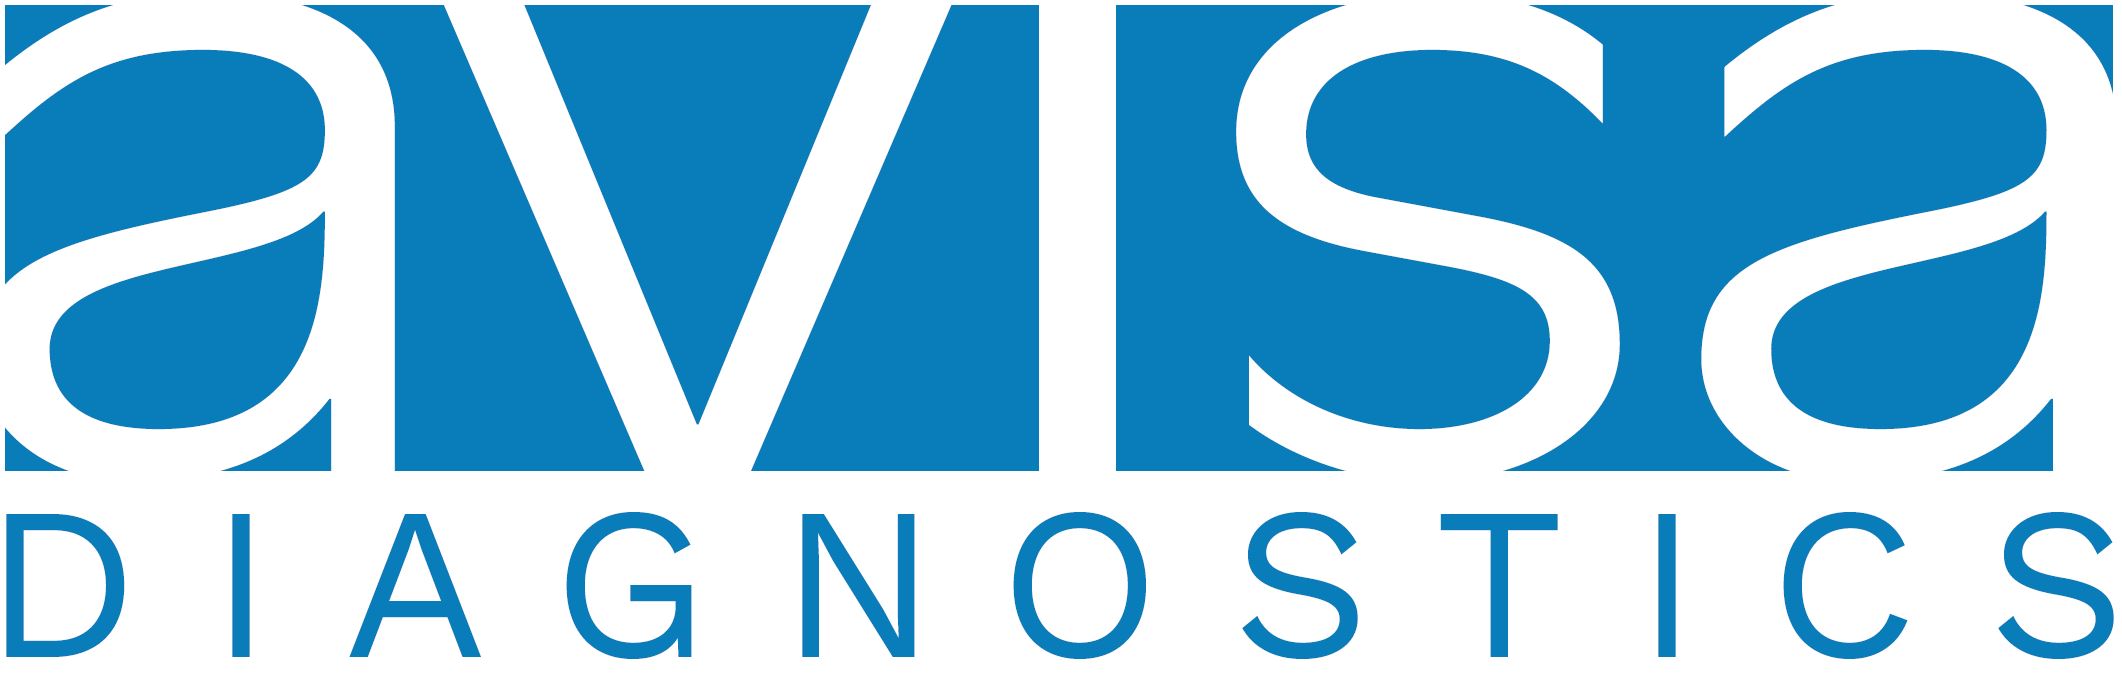 20210310_AVISA_logo for PR.JPG